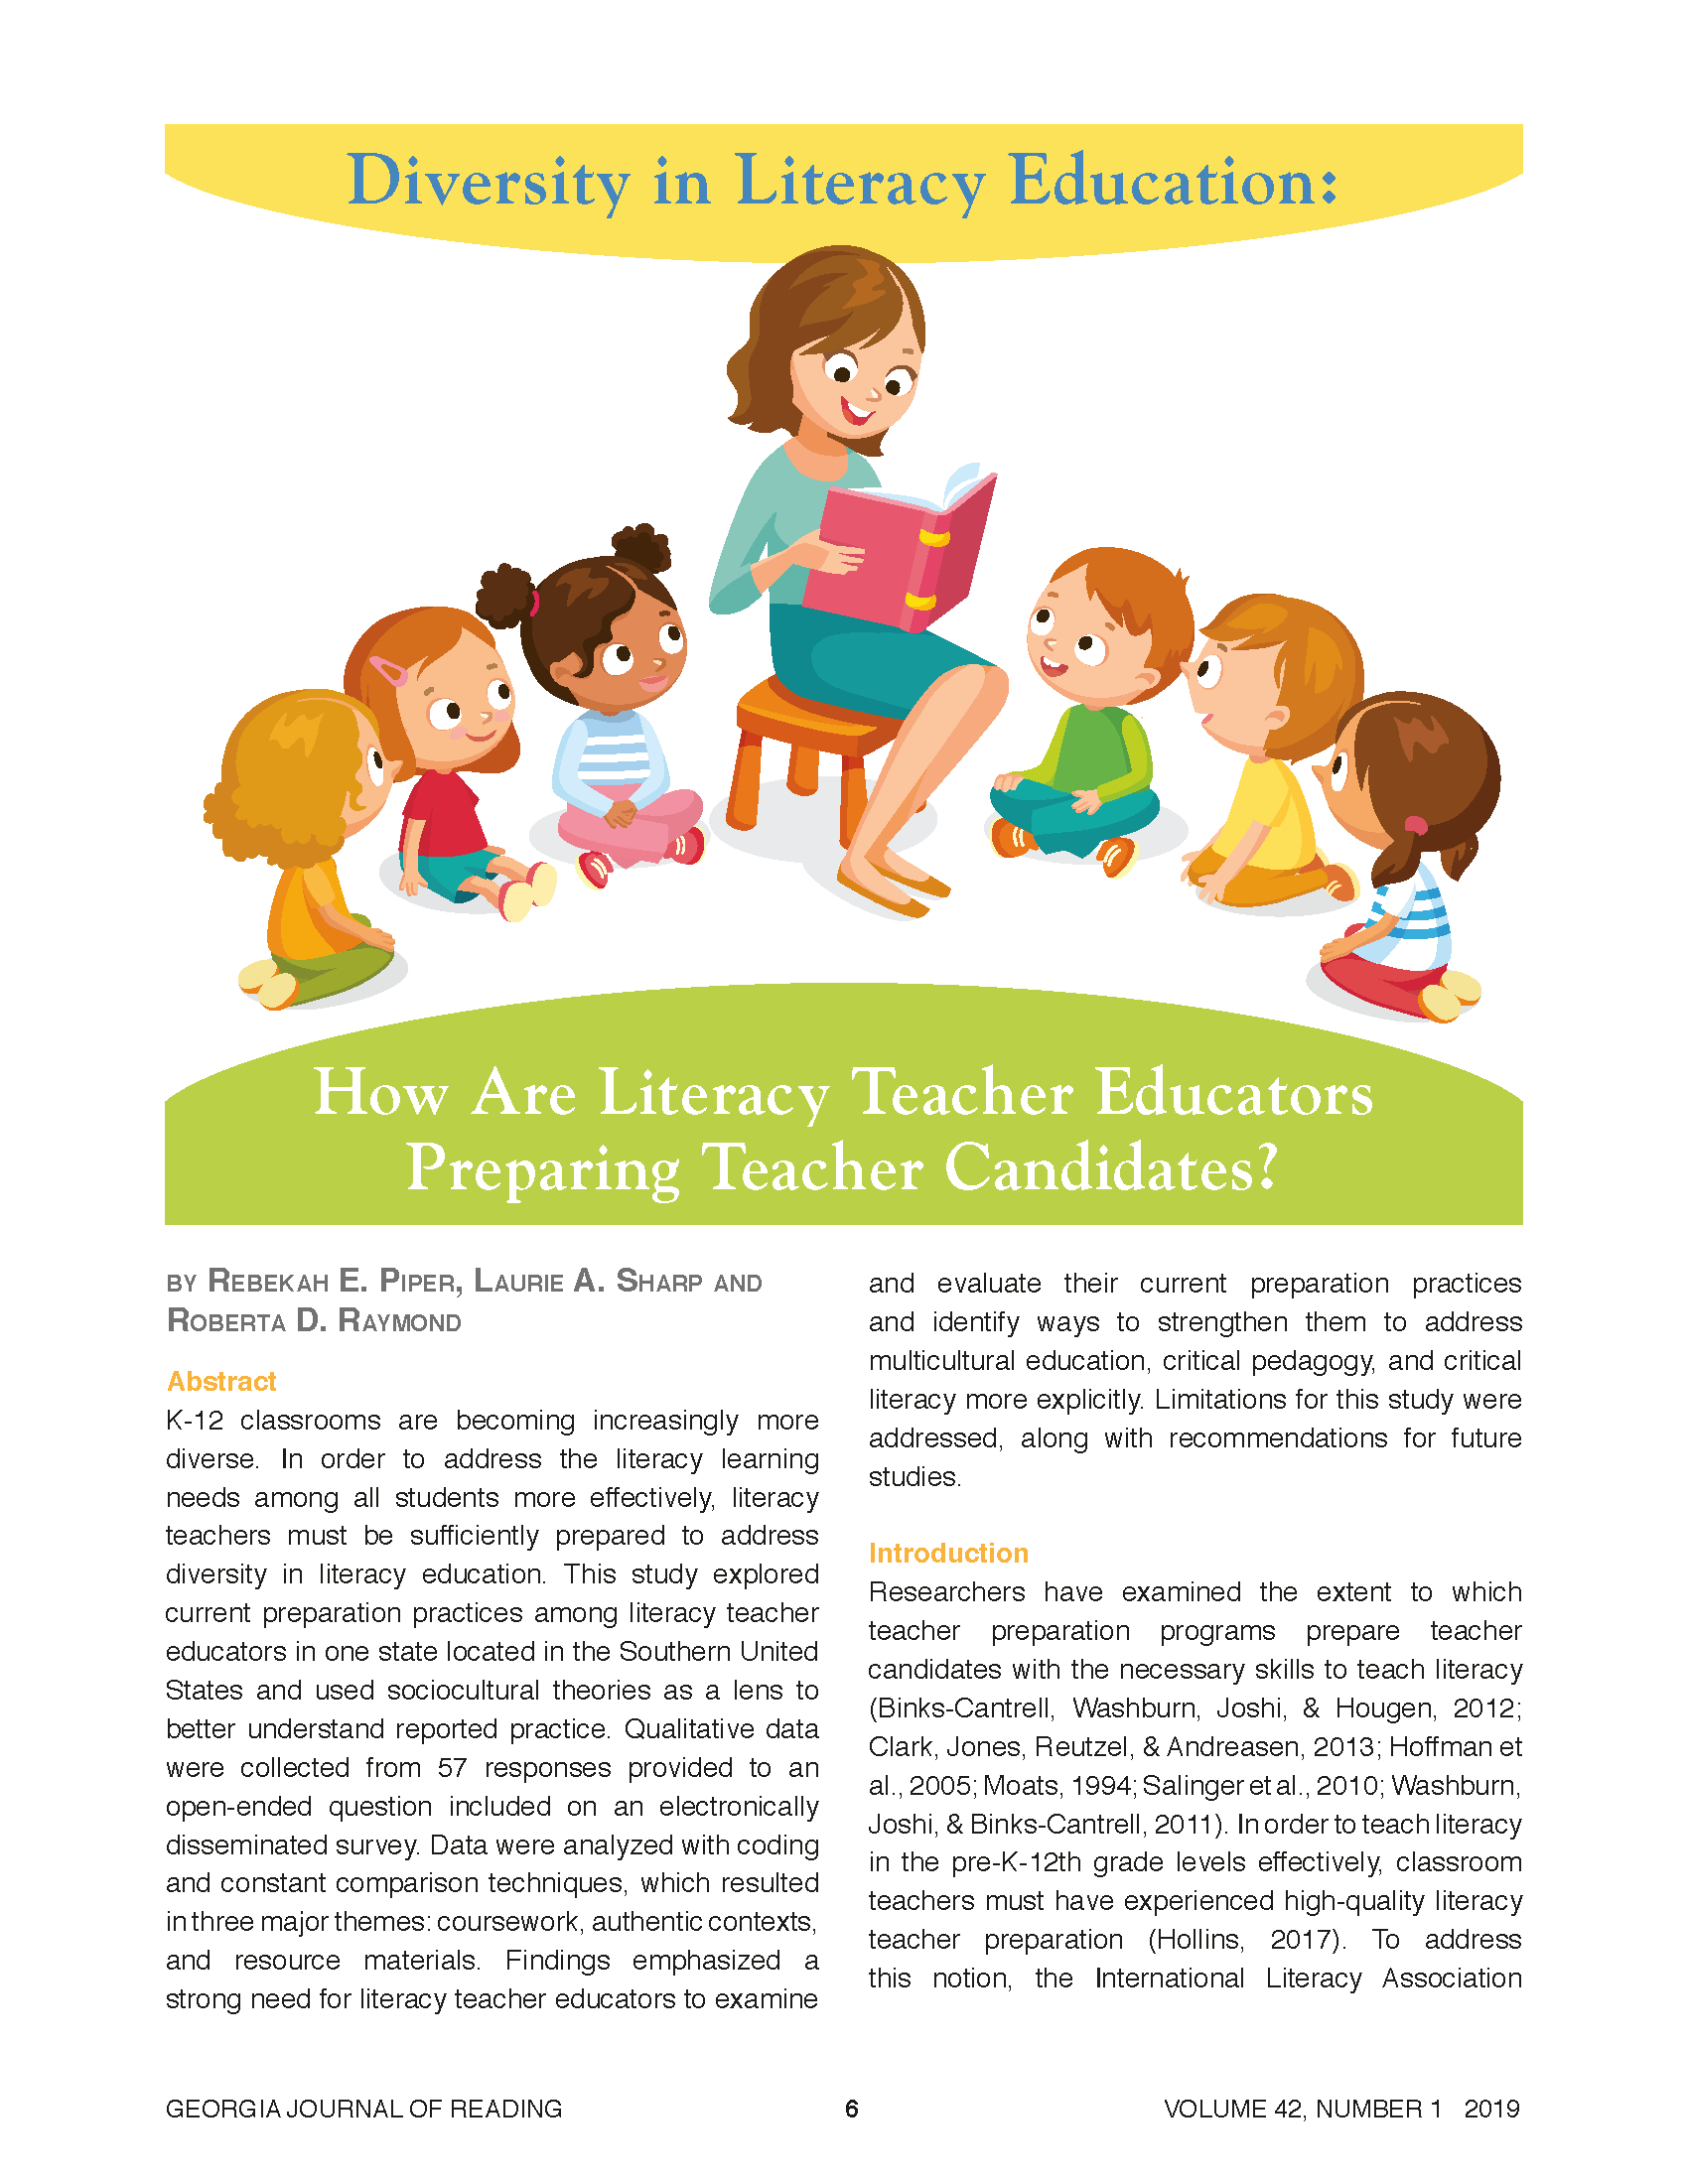 Diversity in Literacy Education (Piper et al., 2019)